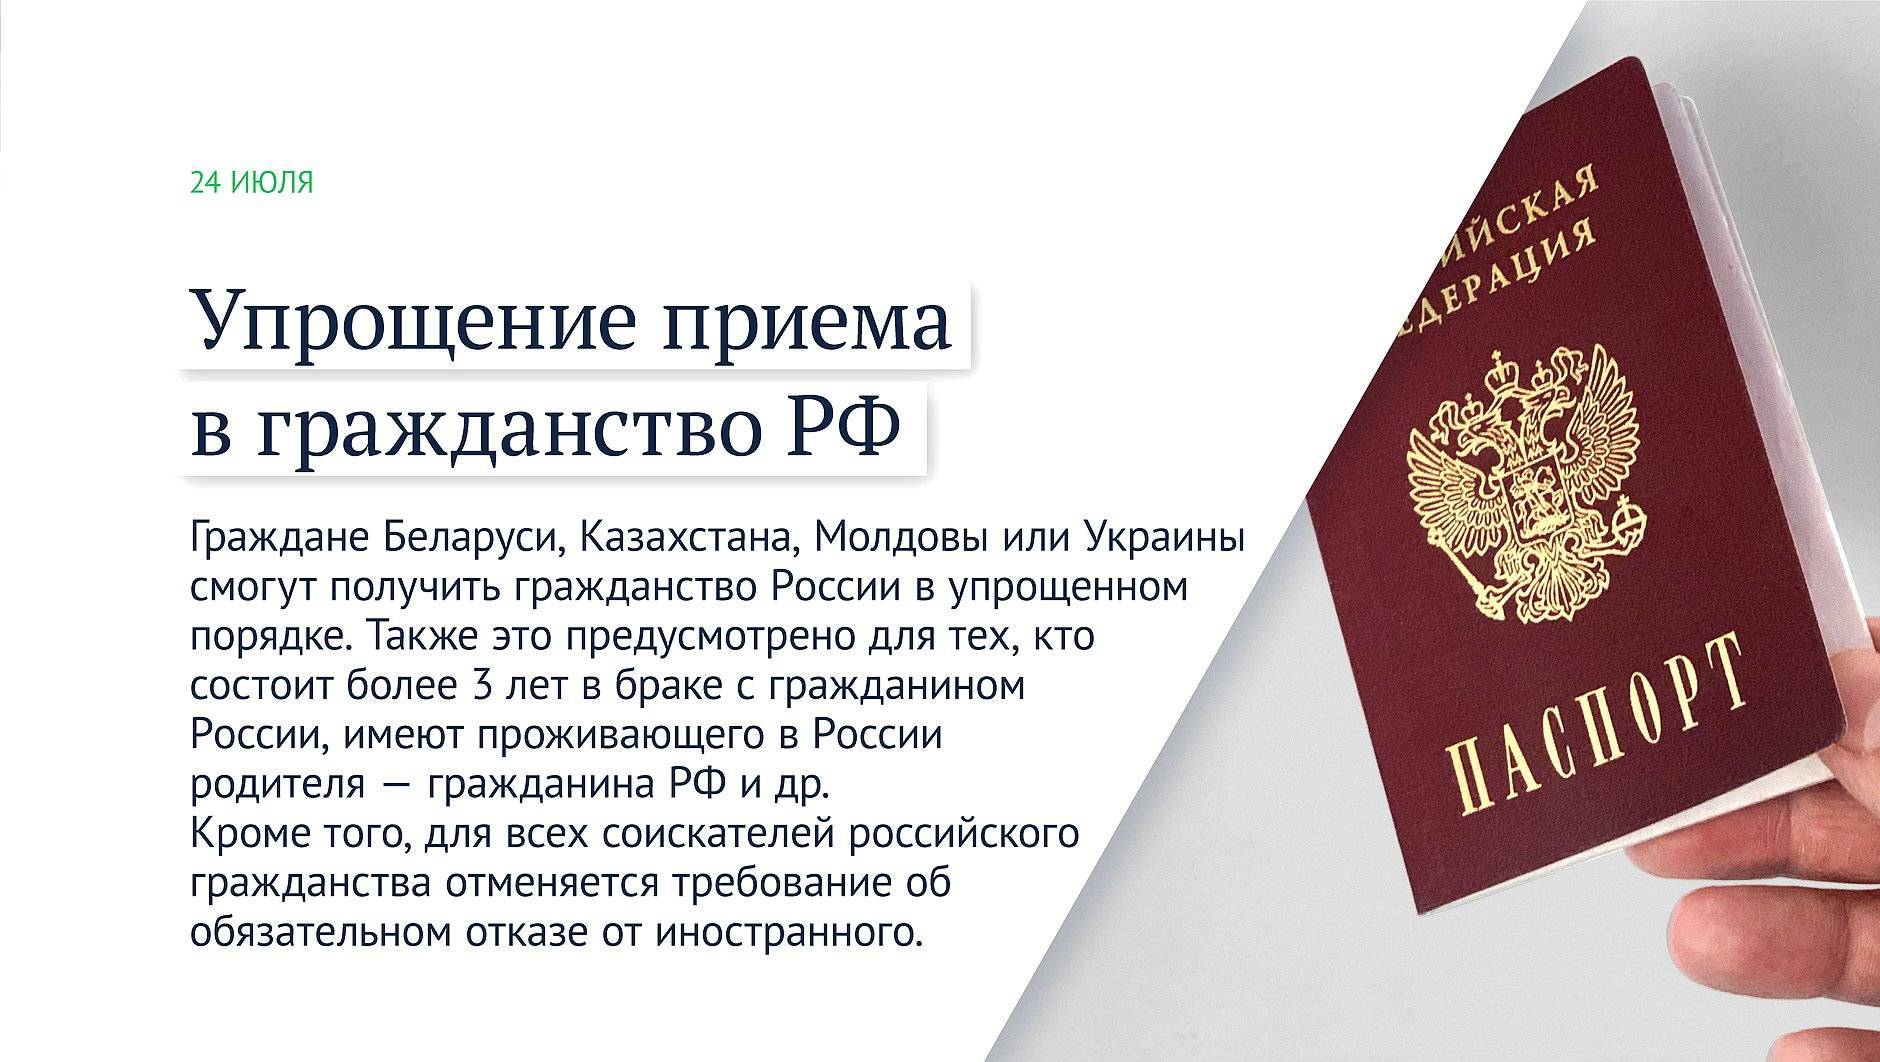 Значение двойного гражданства для граждан россии и украины